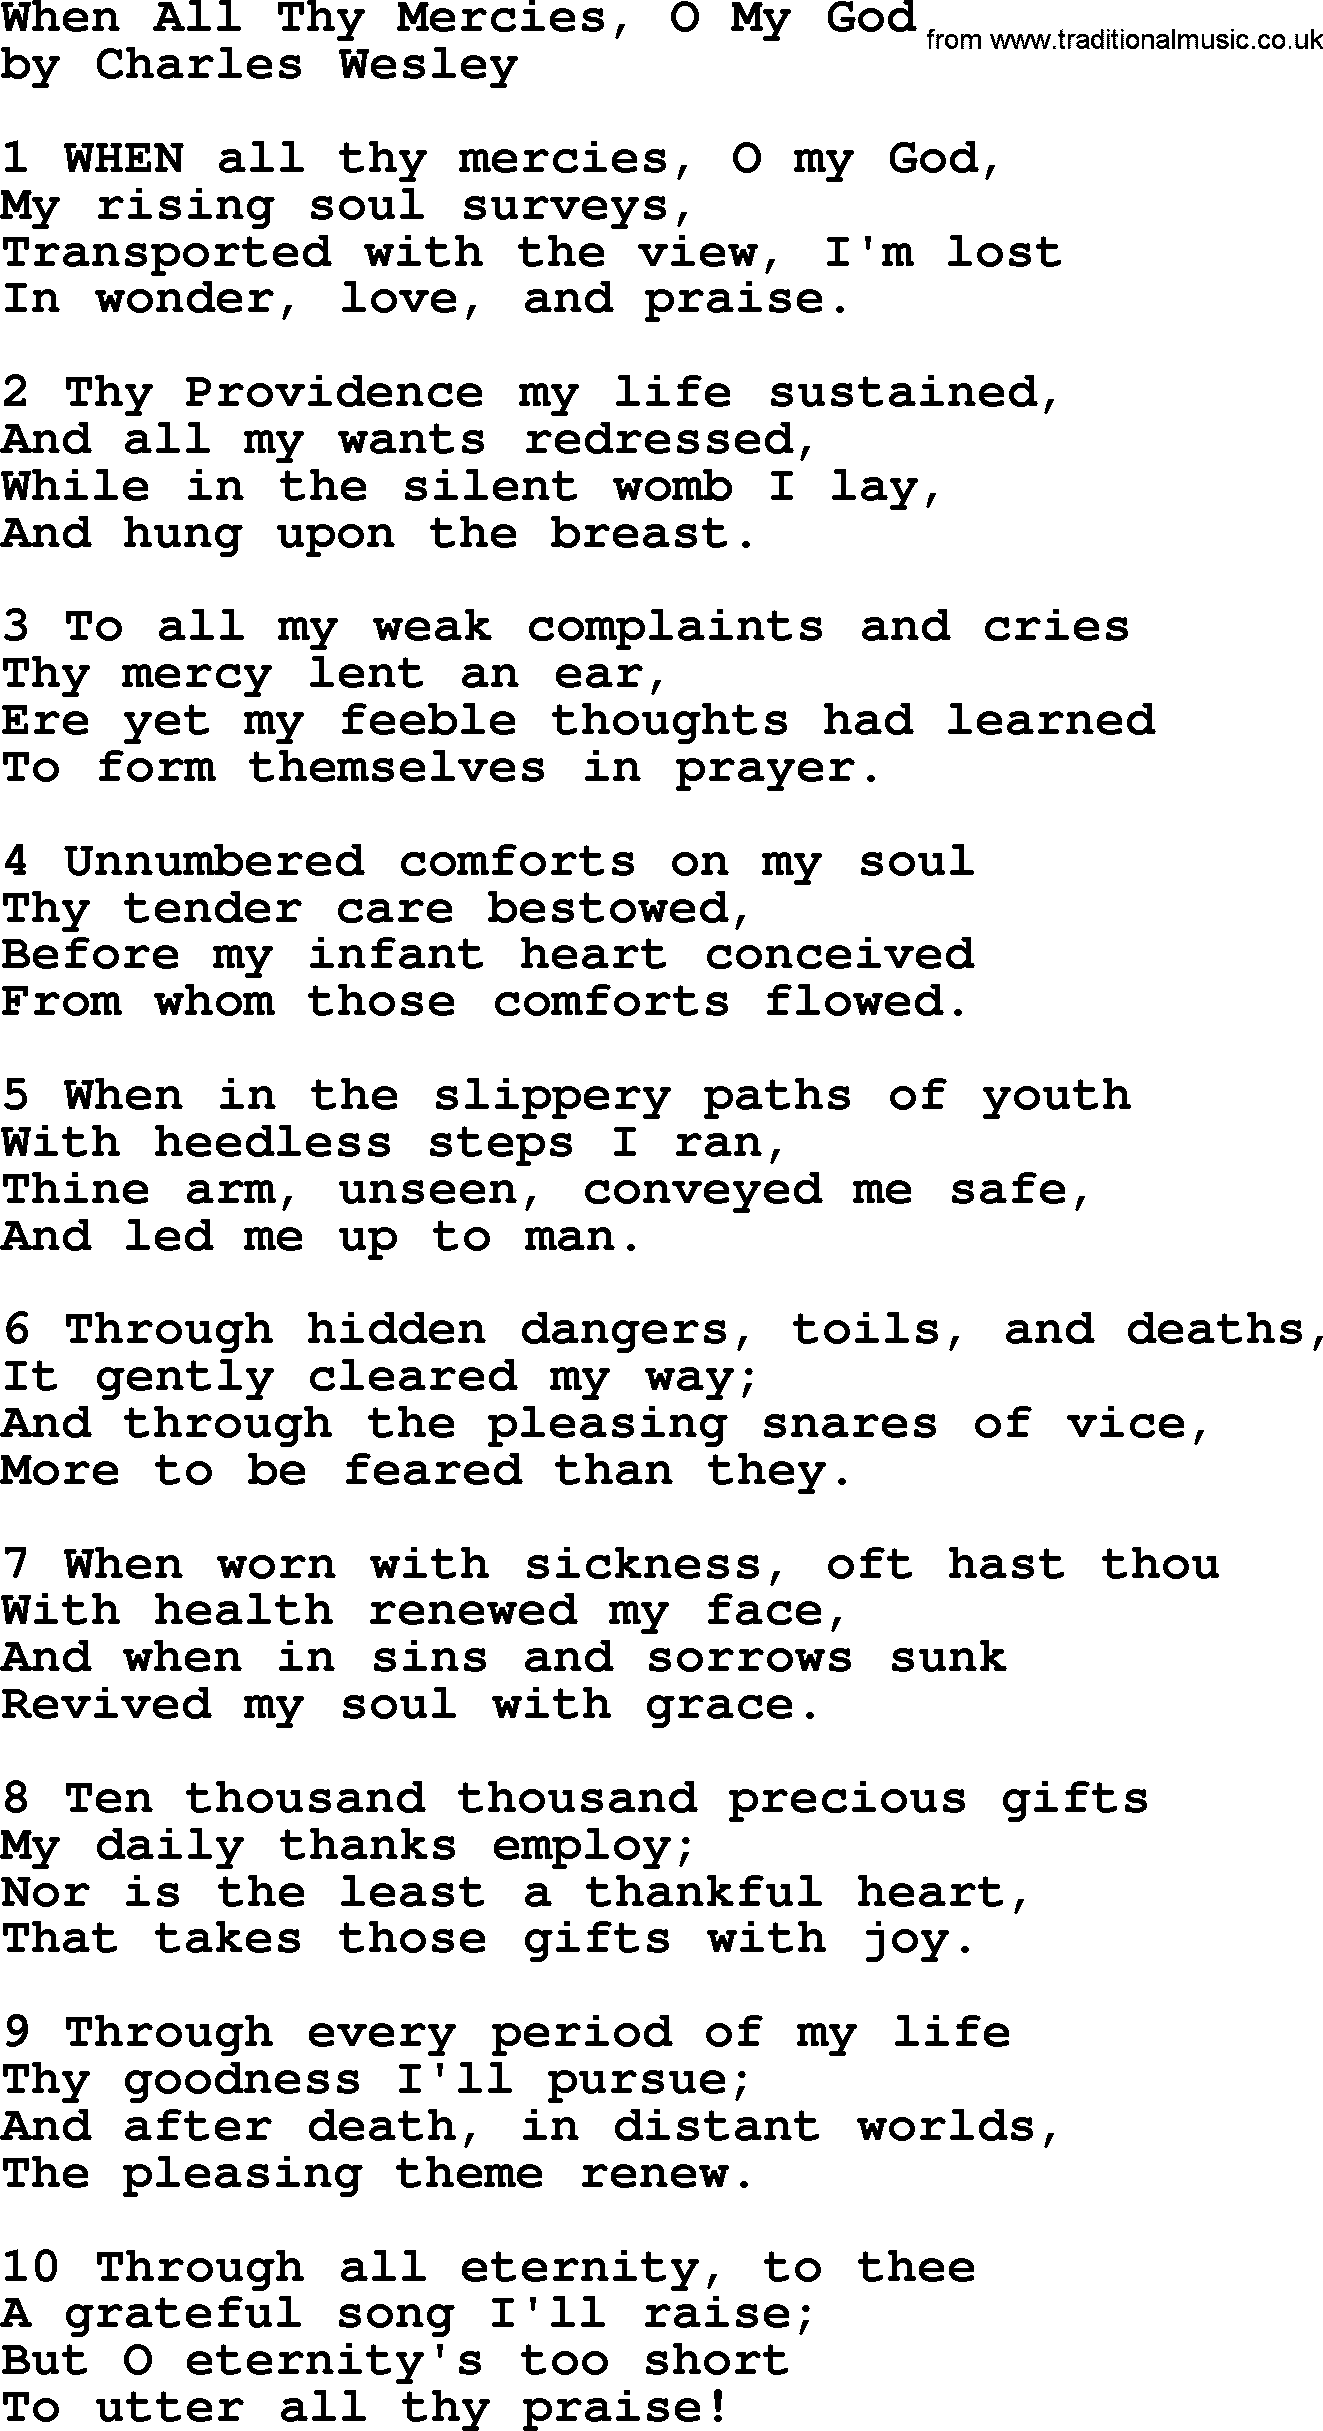 Charles Wesley hymn: When All Thy Mercies, O My God, lyrics